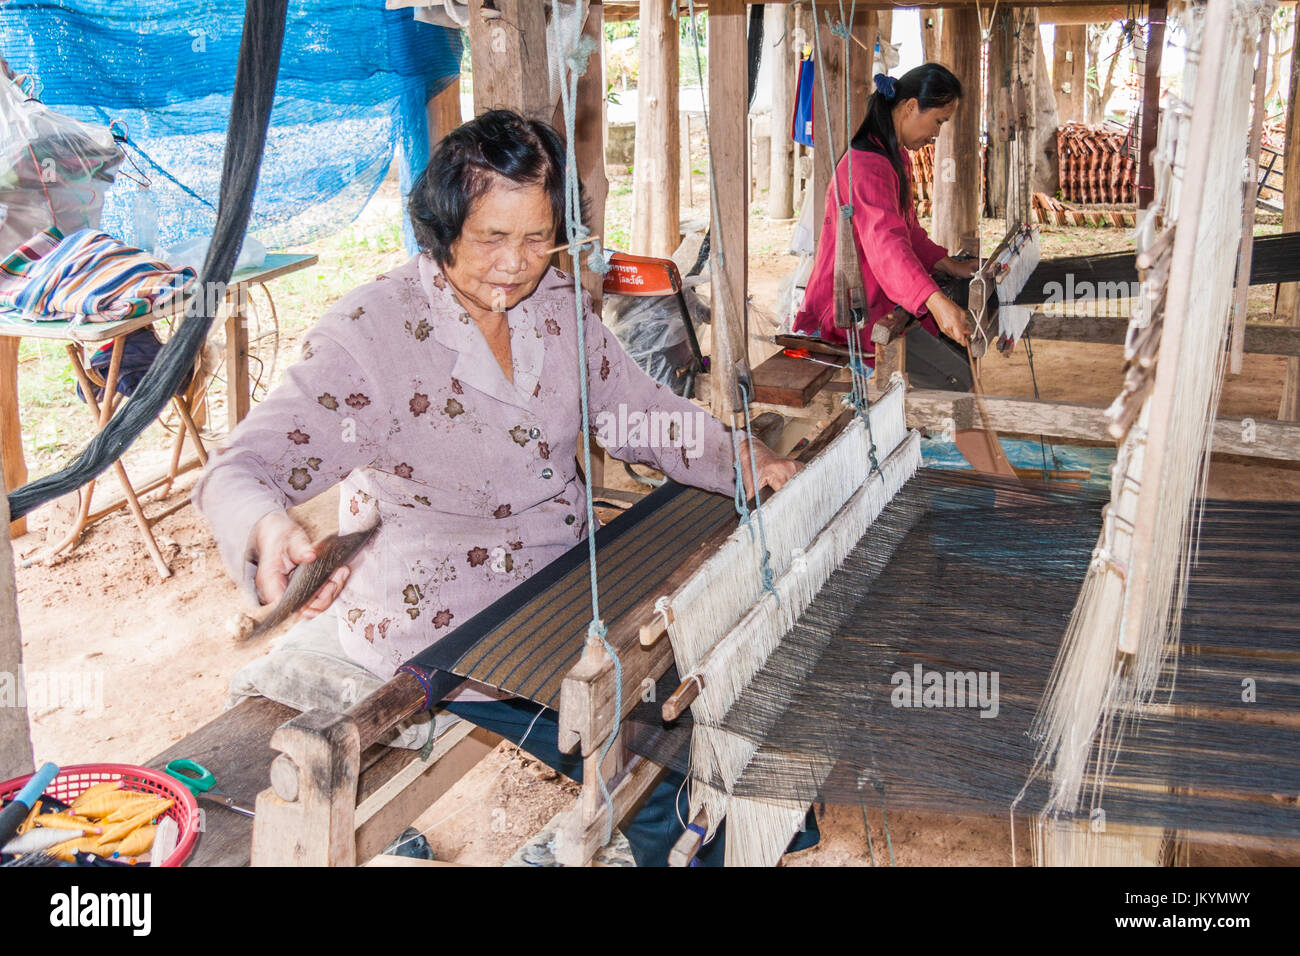 Los Tailandeses Utilizan Pequeños Telar O Máquina De Tejer Para Tejer  Programa De Viajero En Ayutthaya, Tailandia Fotos, retratos, imágenes y  fotografía de archivo libres de derecho. Image 71388400